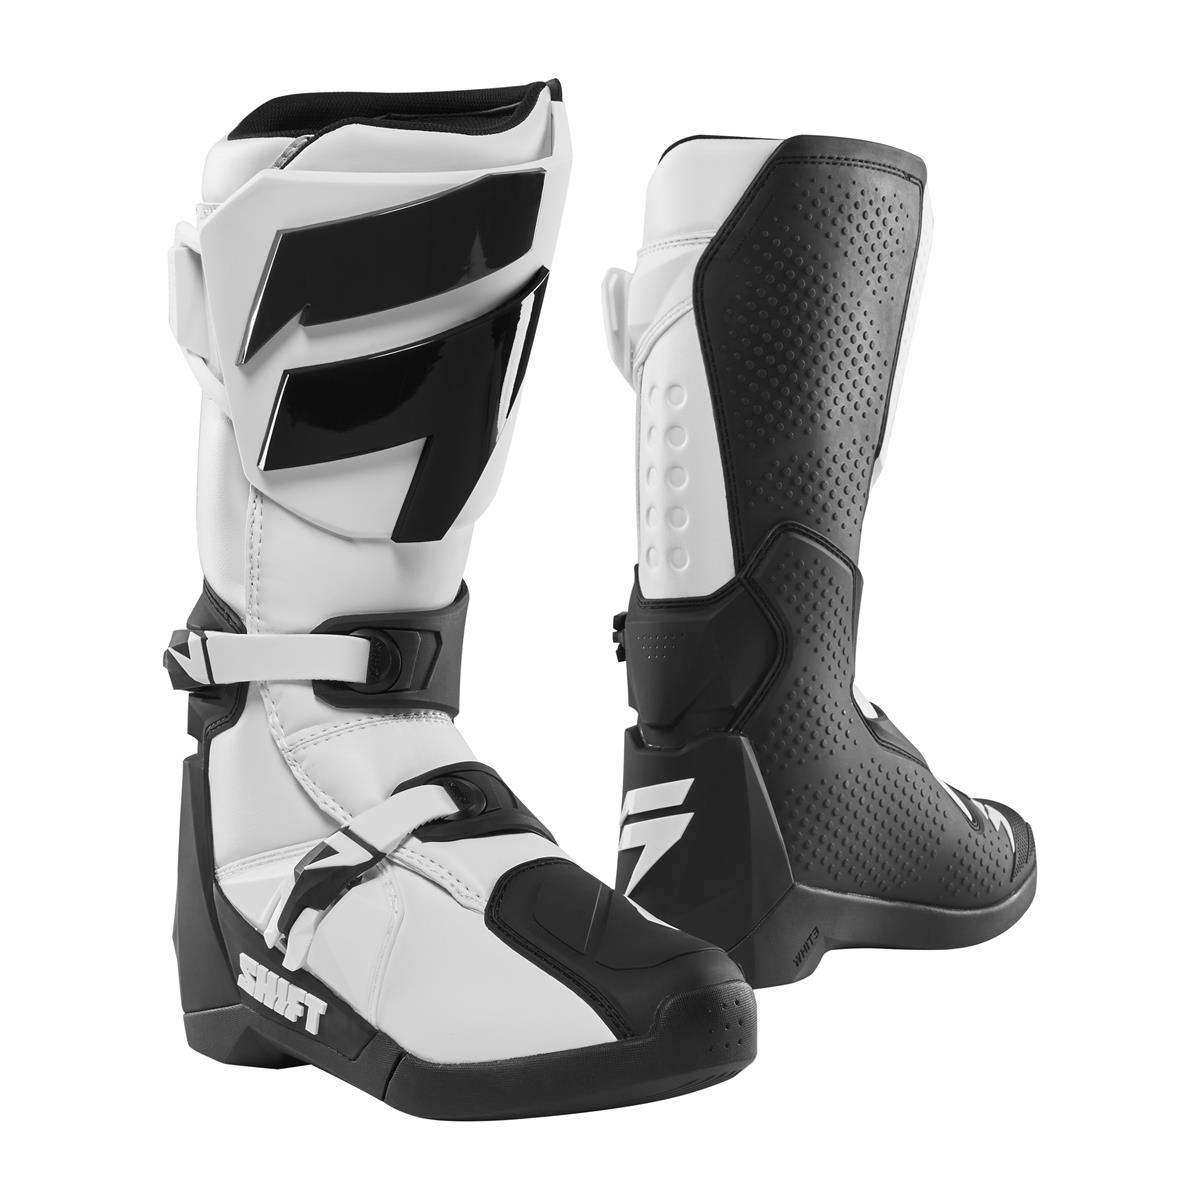 Shift MX Boots Whit3 Label White/Black